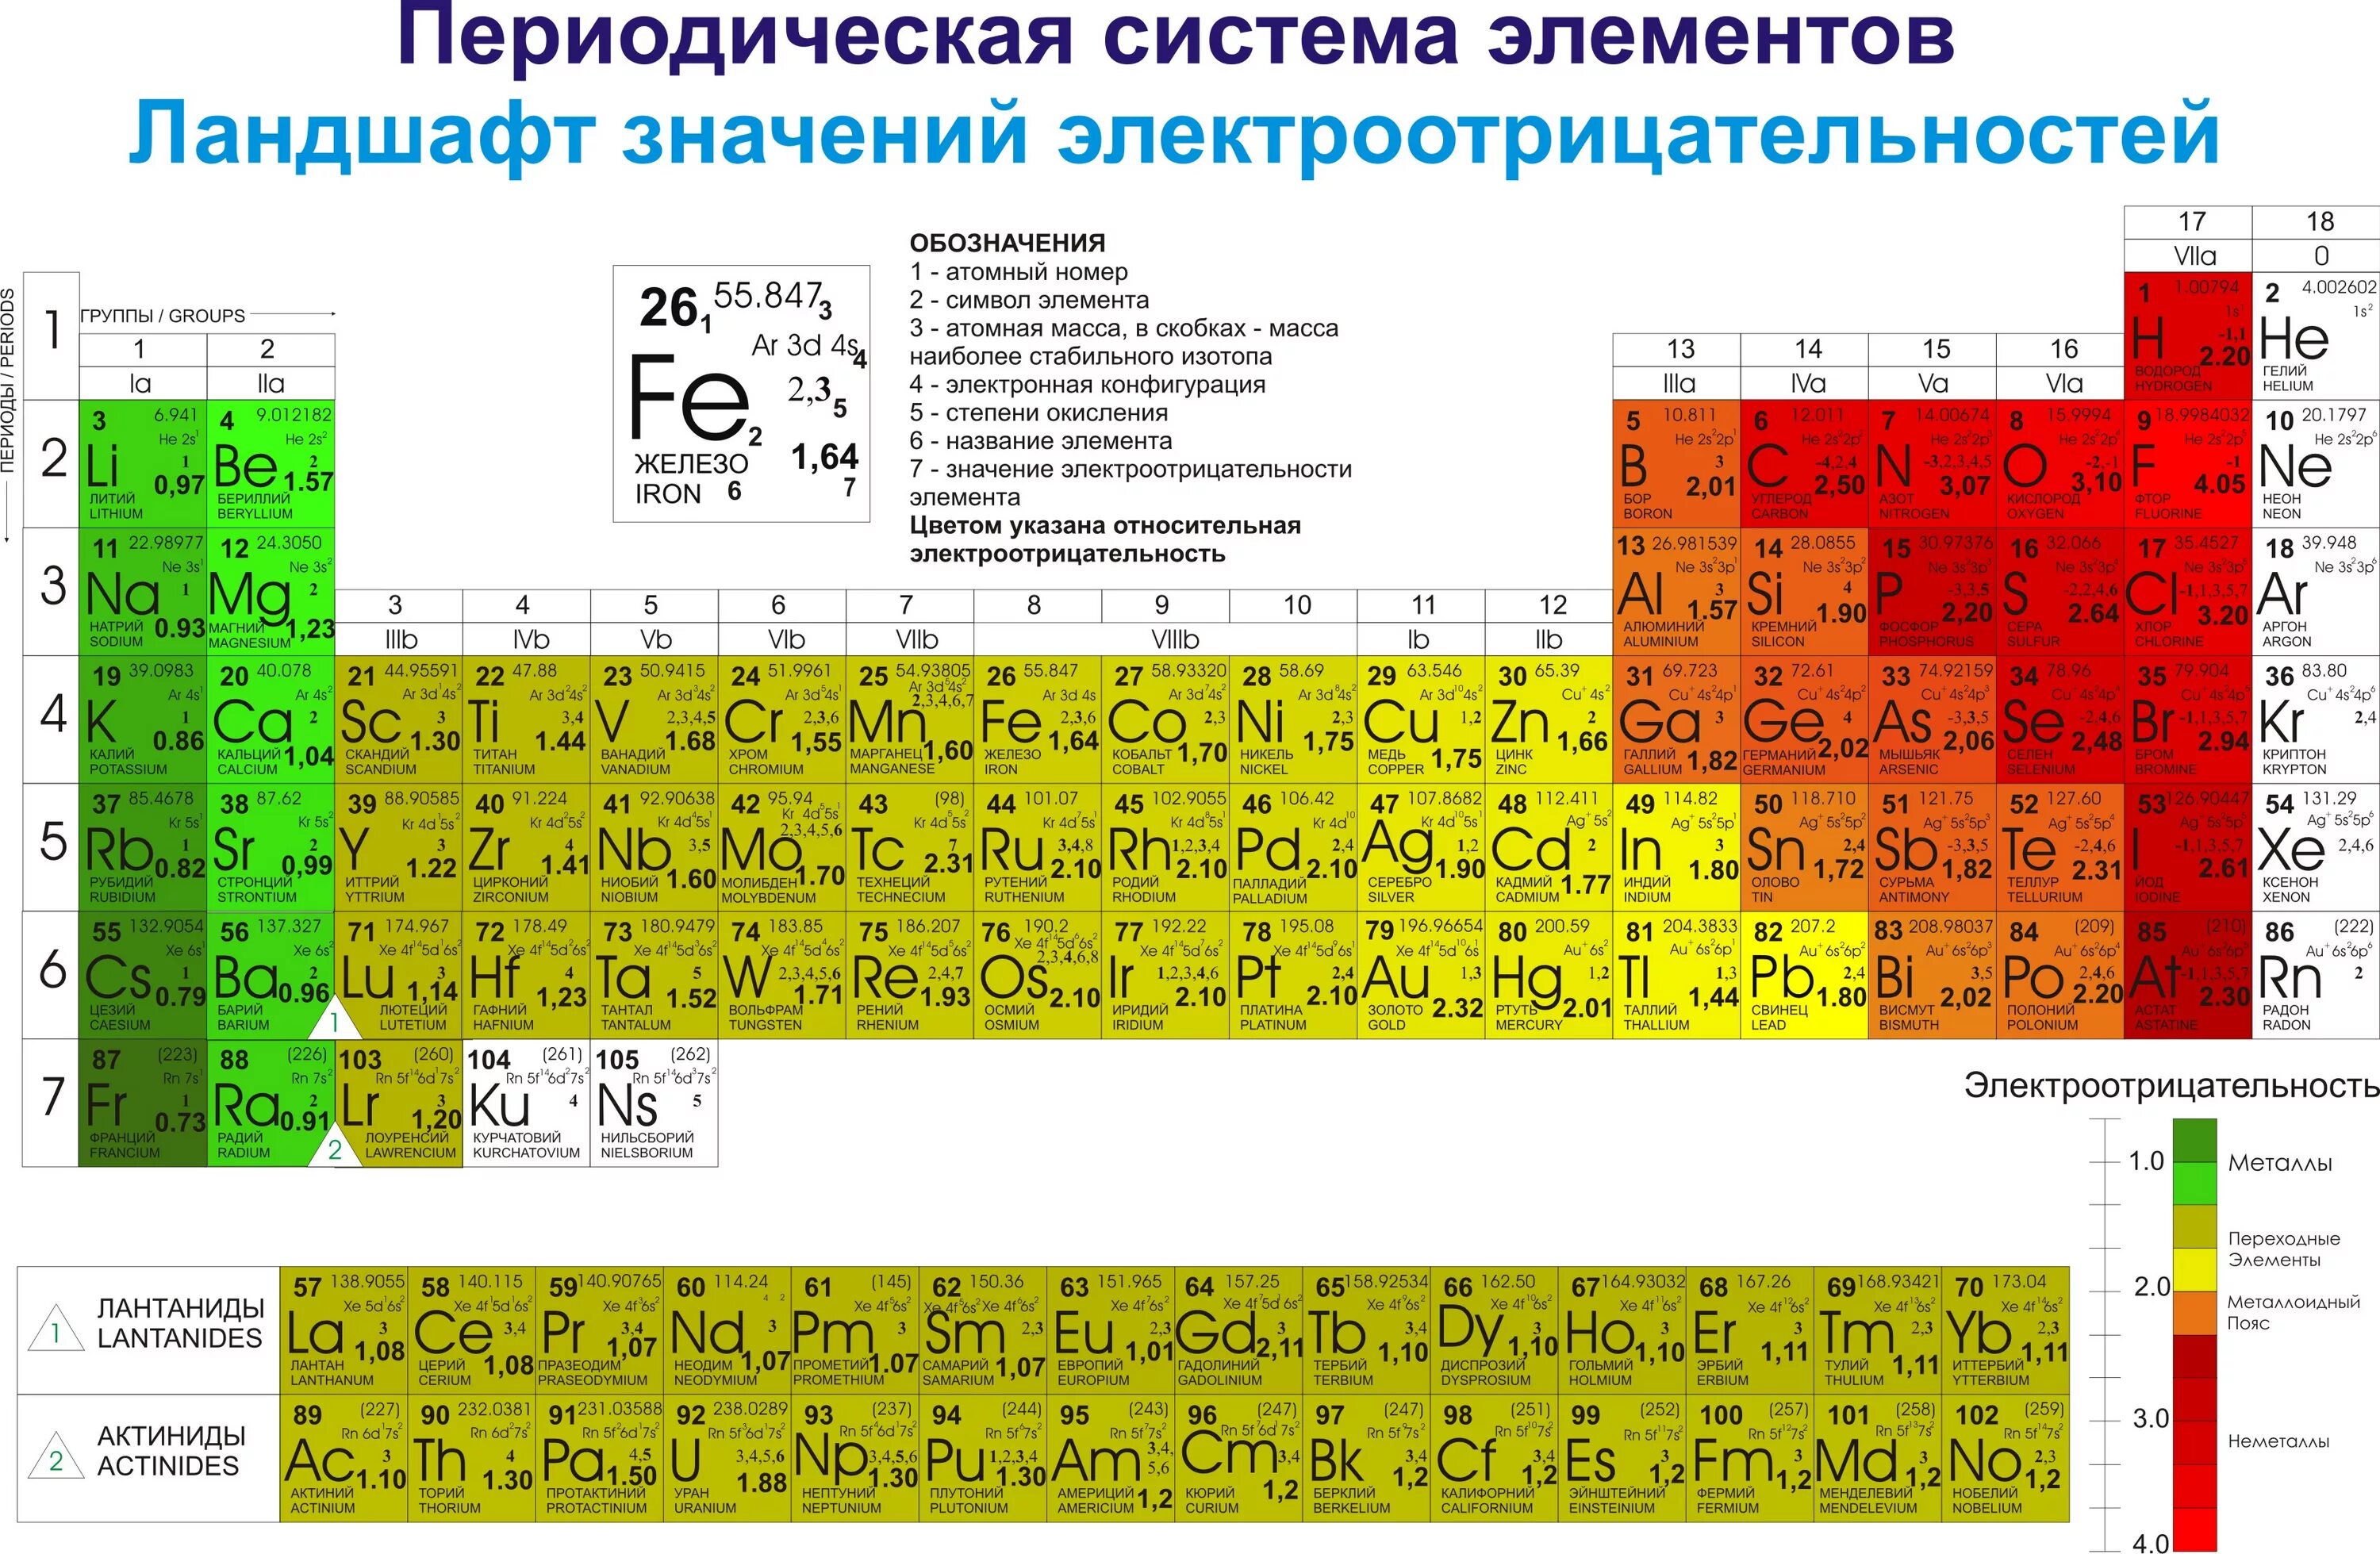 Атомный радиус хлора брома фтора. Хим таблица электроотрицательности. Электроотрицательность атомов таблица. Таблица электроотрицательности химических элементов Менделеева. Электроотрицательность в таблице Менделеева.